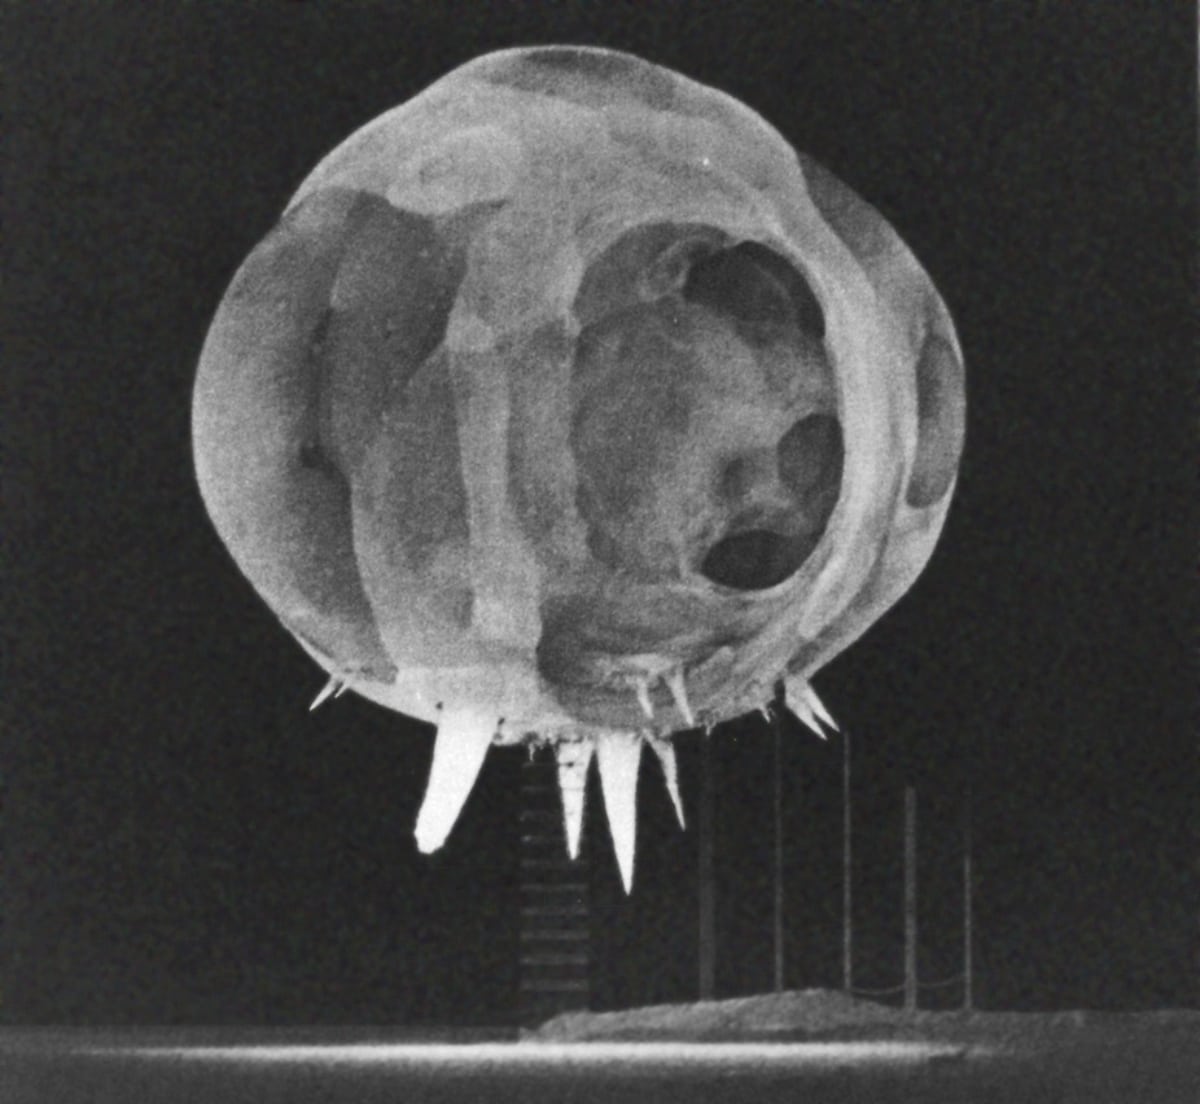 Capturing Destruction: Edgerton's Nuclear Blast Photograph